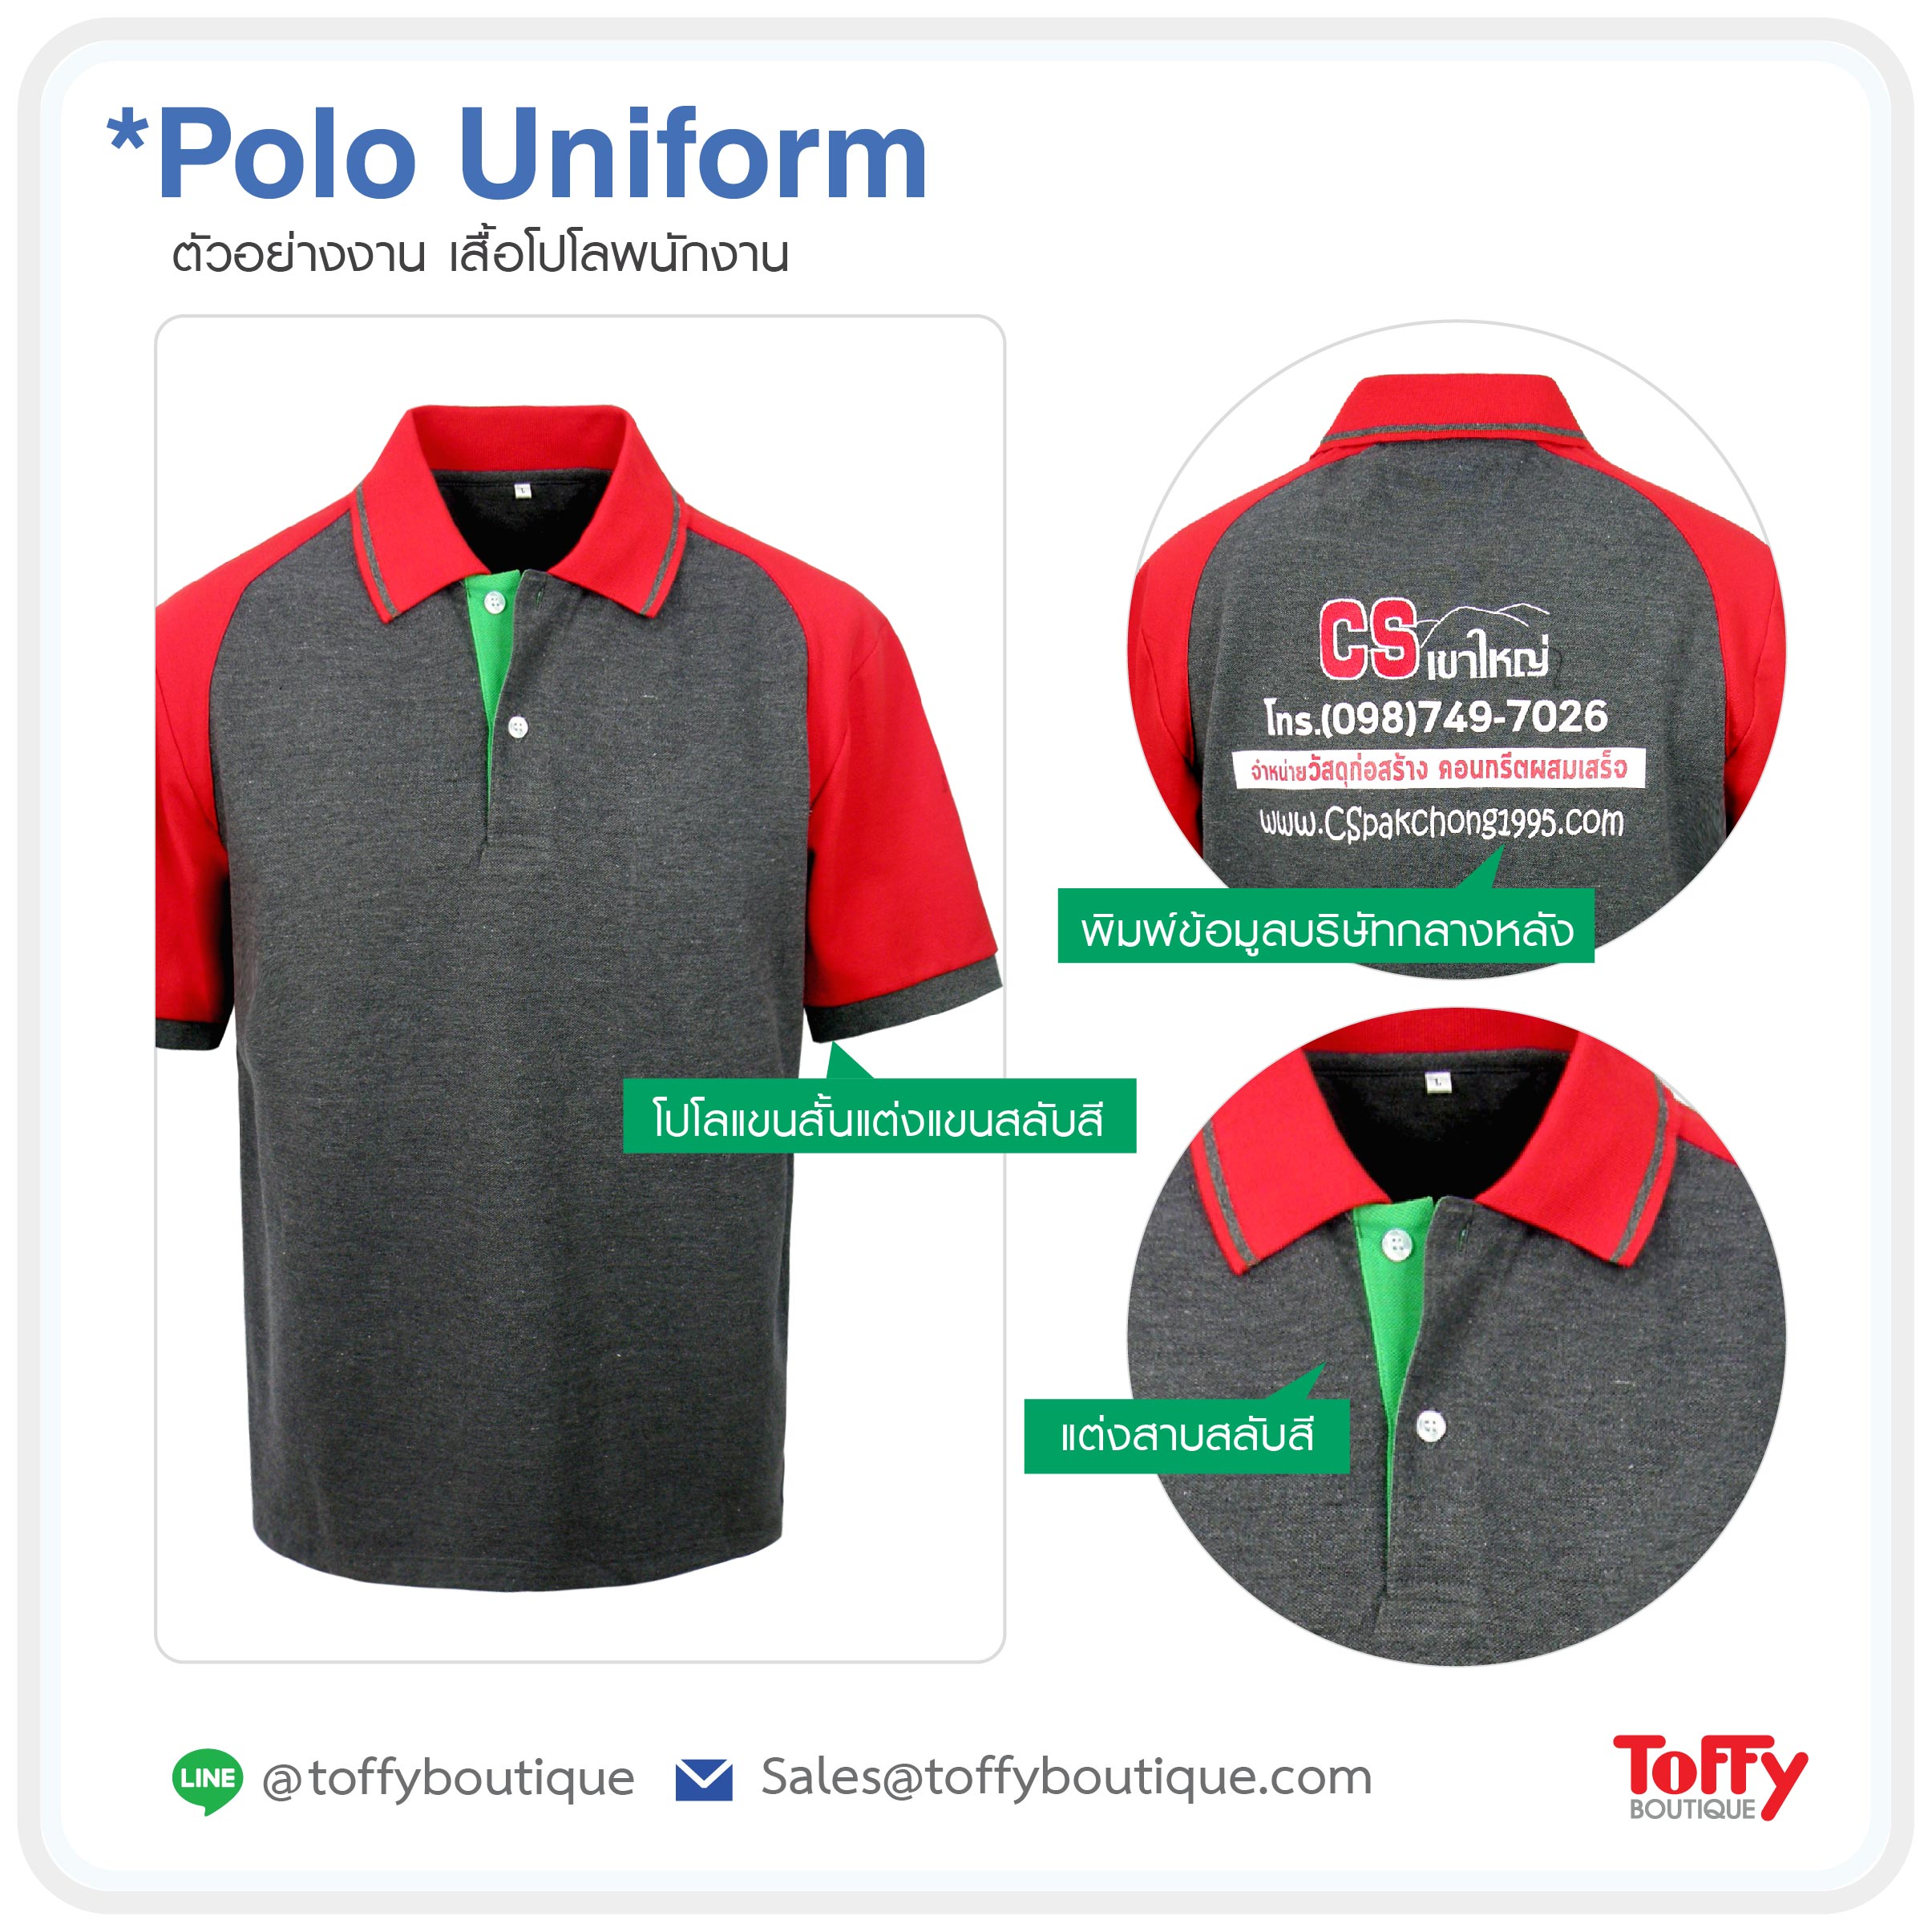 สั่งผลิตเสื้อโปโลยูนิฟอร์ม Polo Uniform